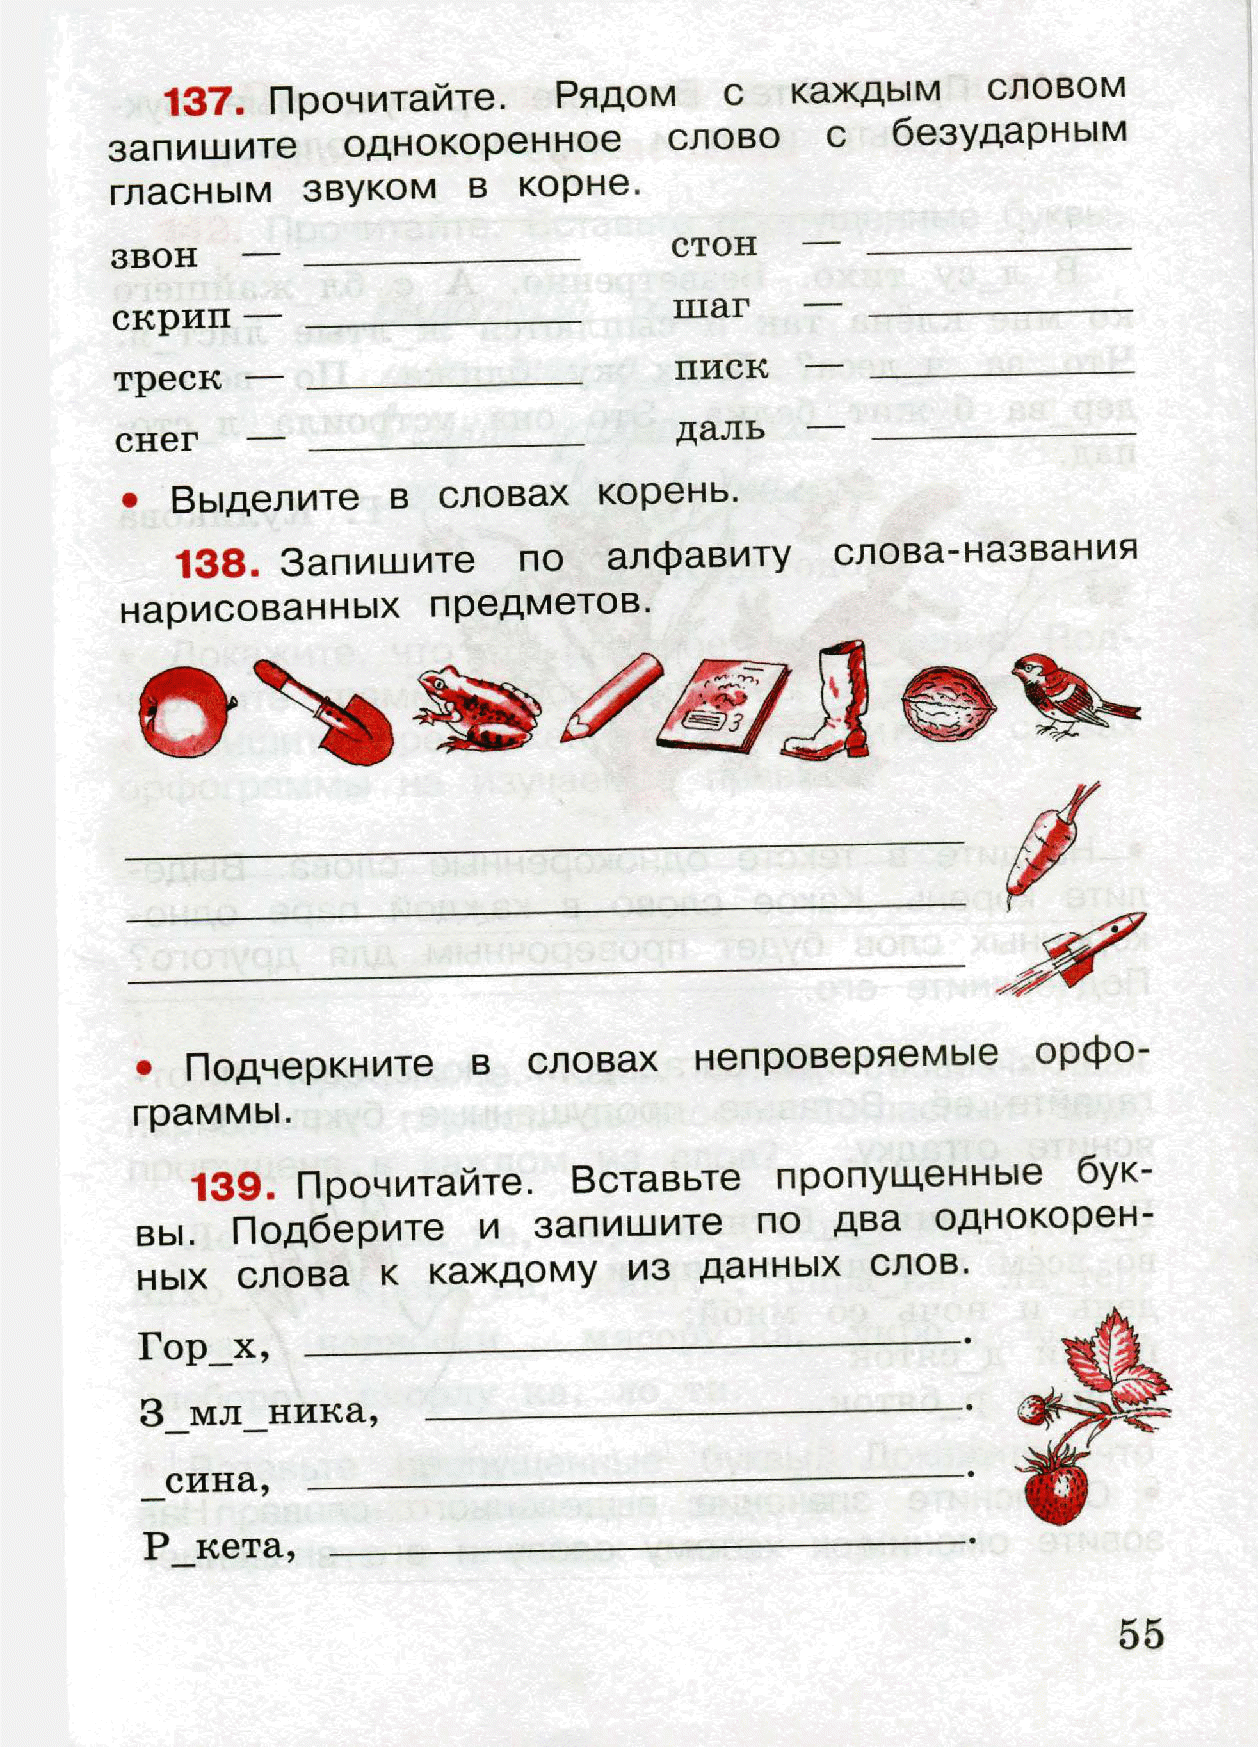 Русский язык тетрадь рабочая первый часть